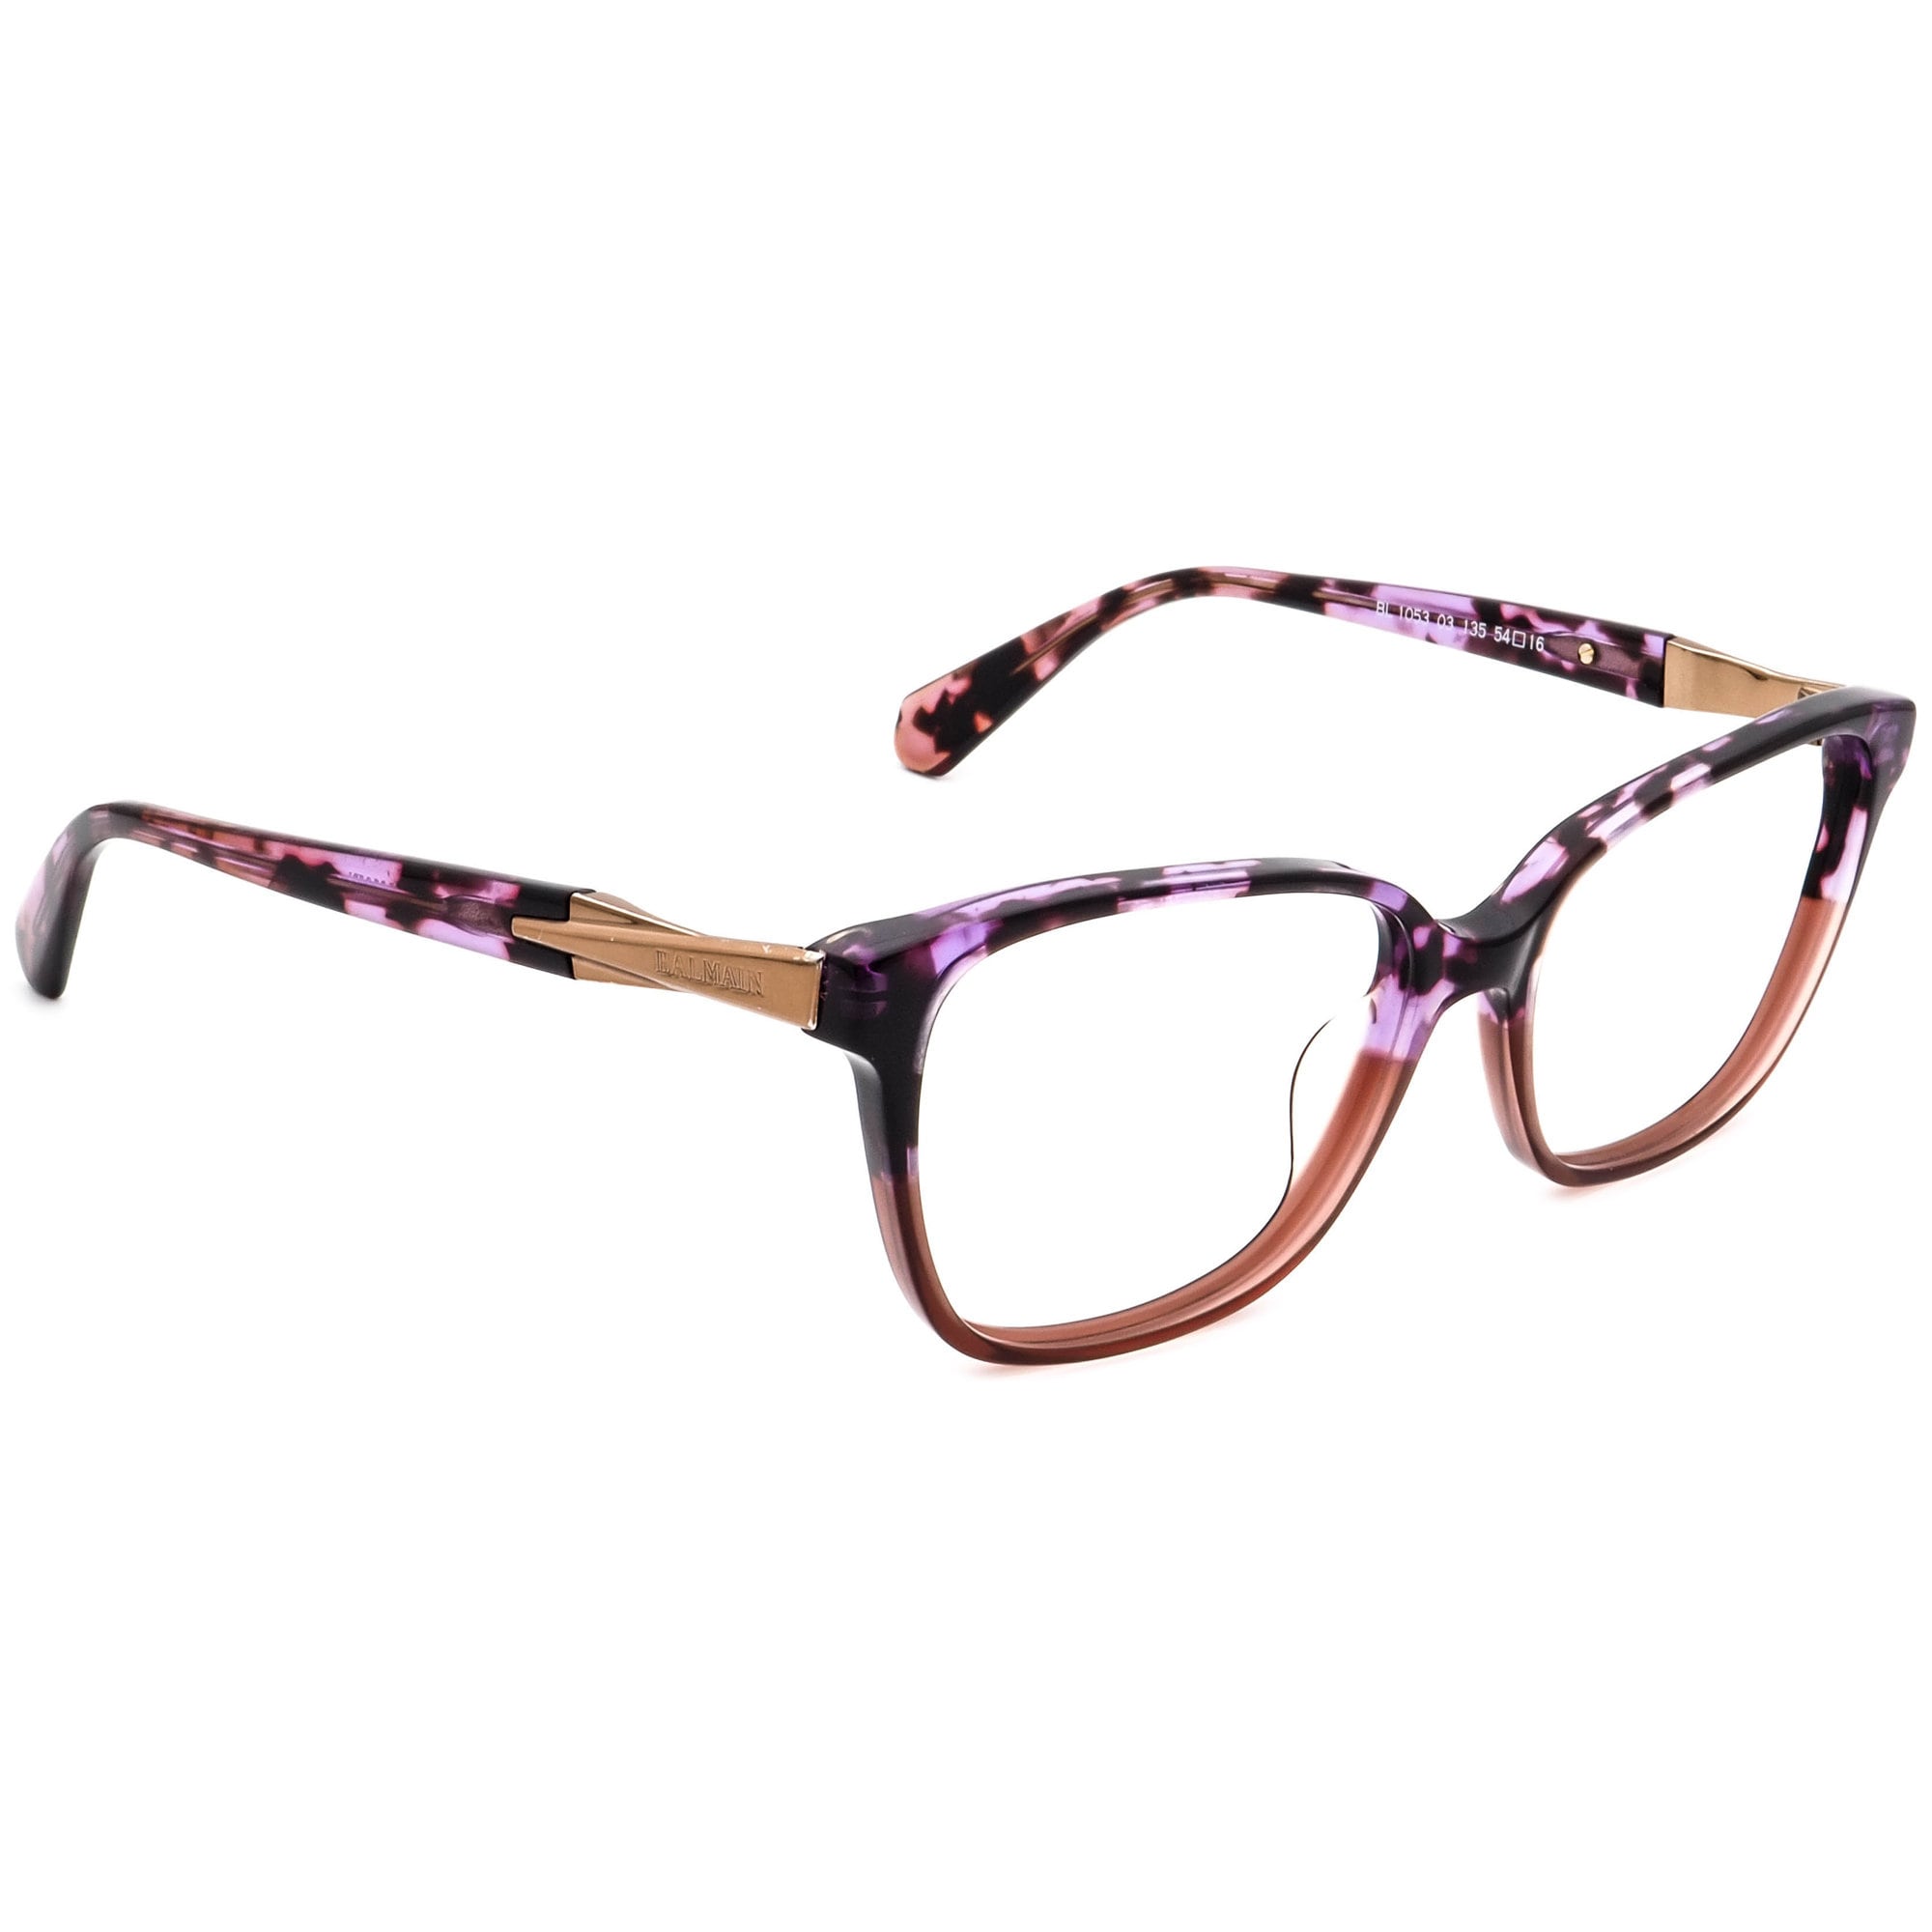 Buy Balmain Eyeglasses BL1053 03 Purple Tortoise Rectangular Frame Online  in India 